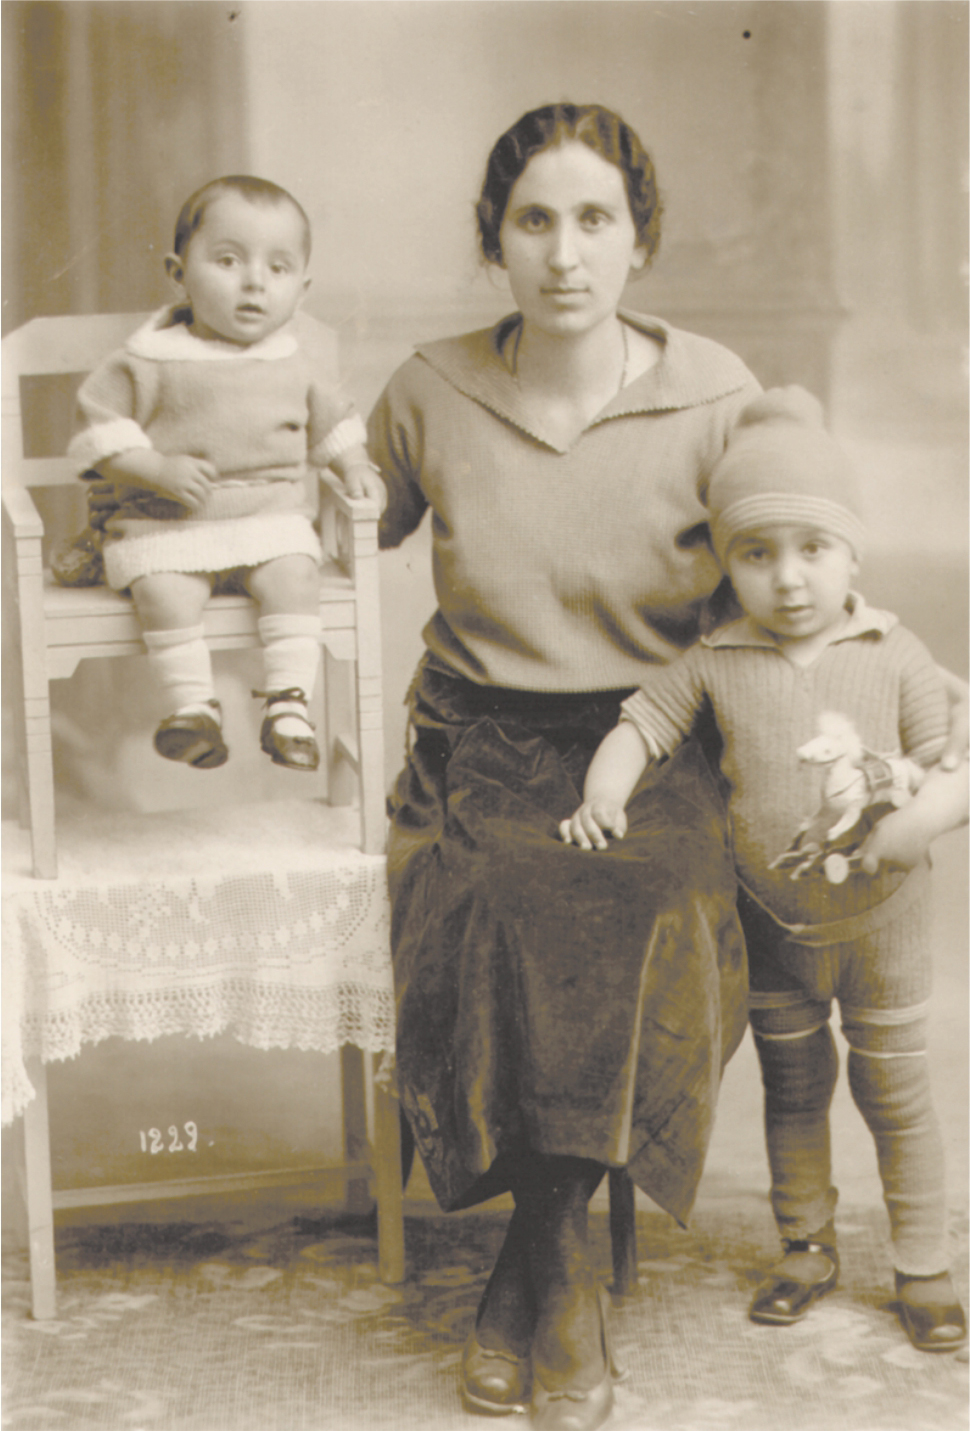 Կարապետ Թաճիրեանի կինը եւ որդիները՝ Տիկ. Արմաշուհի Թաճիրեան (ծնեալ Կամսըզեան), Խոսրով եւ Օննիկ, Լարնակա, 1925 թ.։